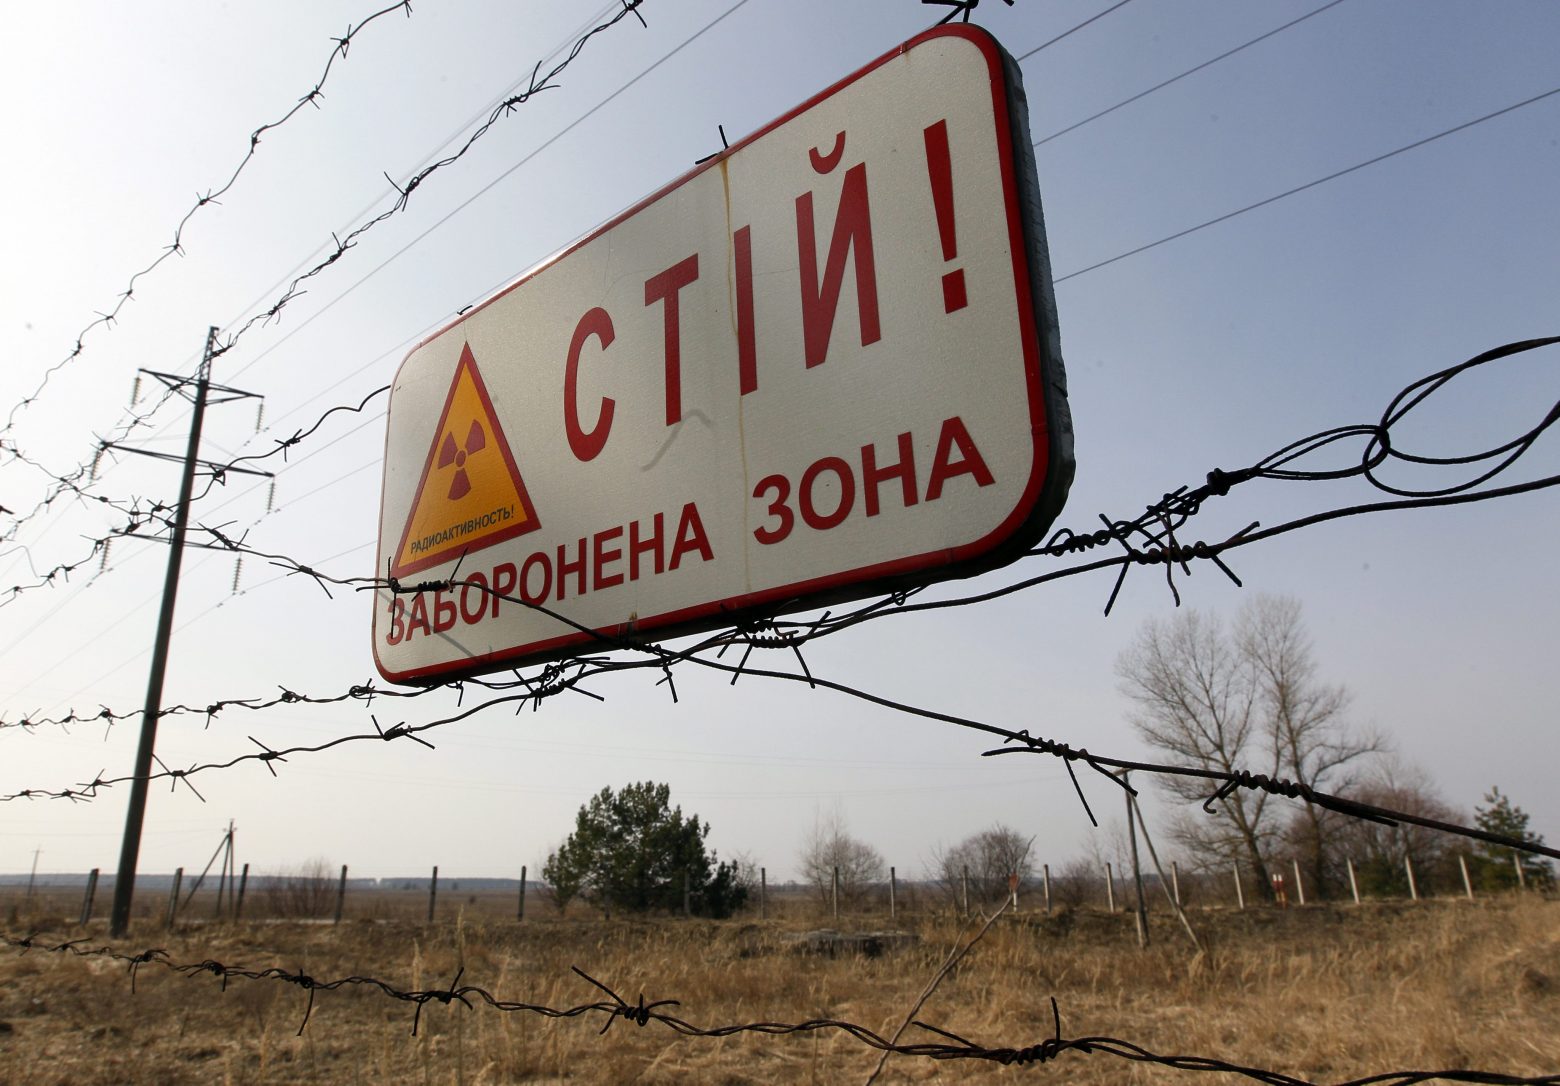 Τσερνόμπιλ: Νέος τρόμος – «Χτυπήθηκε γραμμή ηλεκτροδότησης του πυρηνικού εργοστασίου»